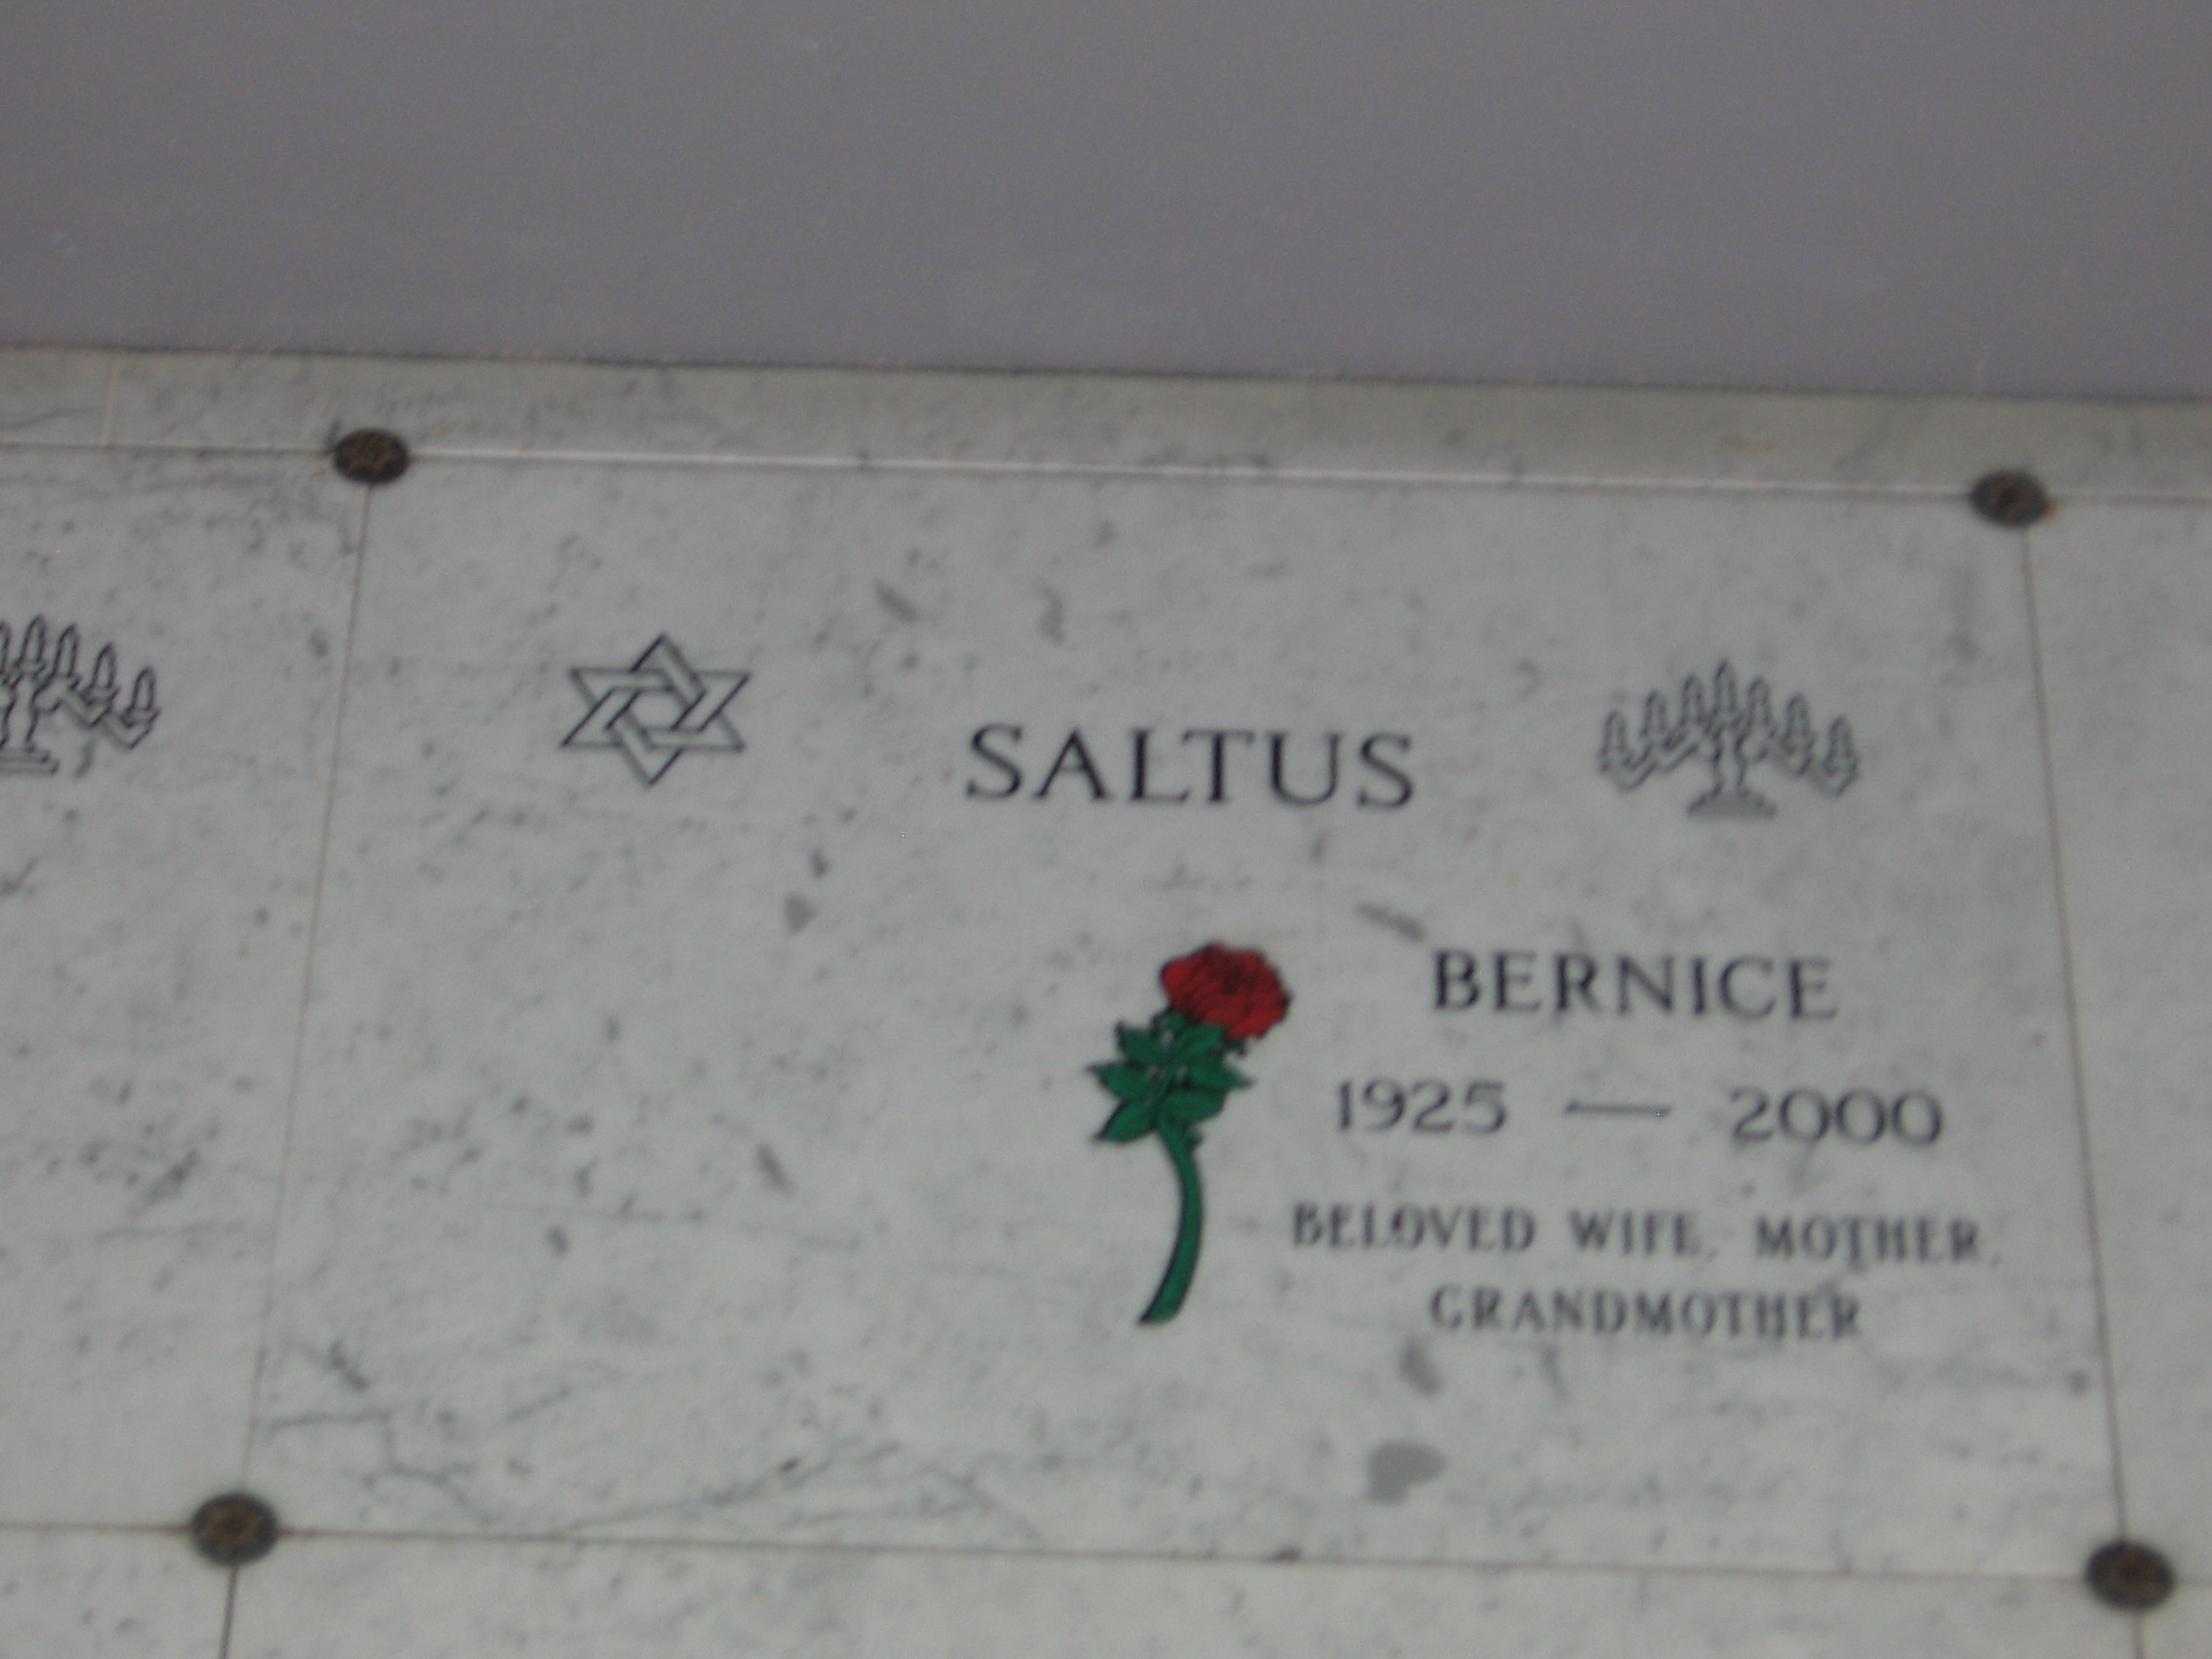 Bernice Saltus